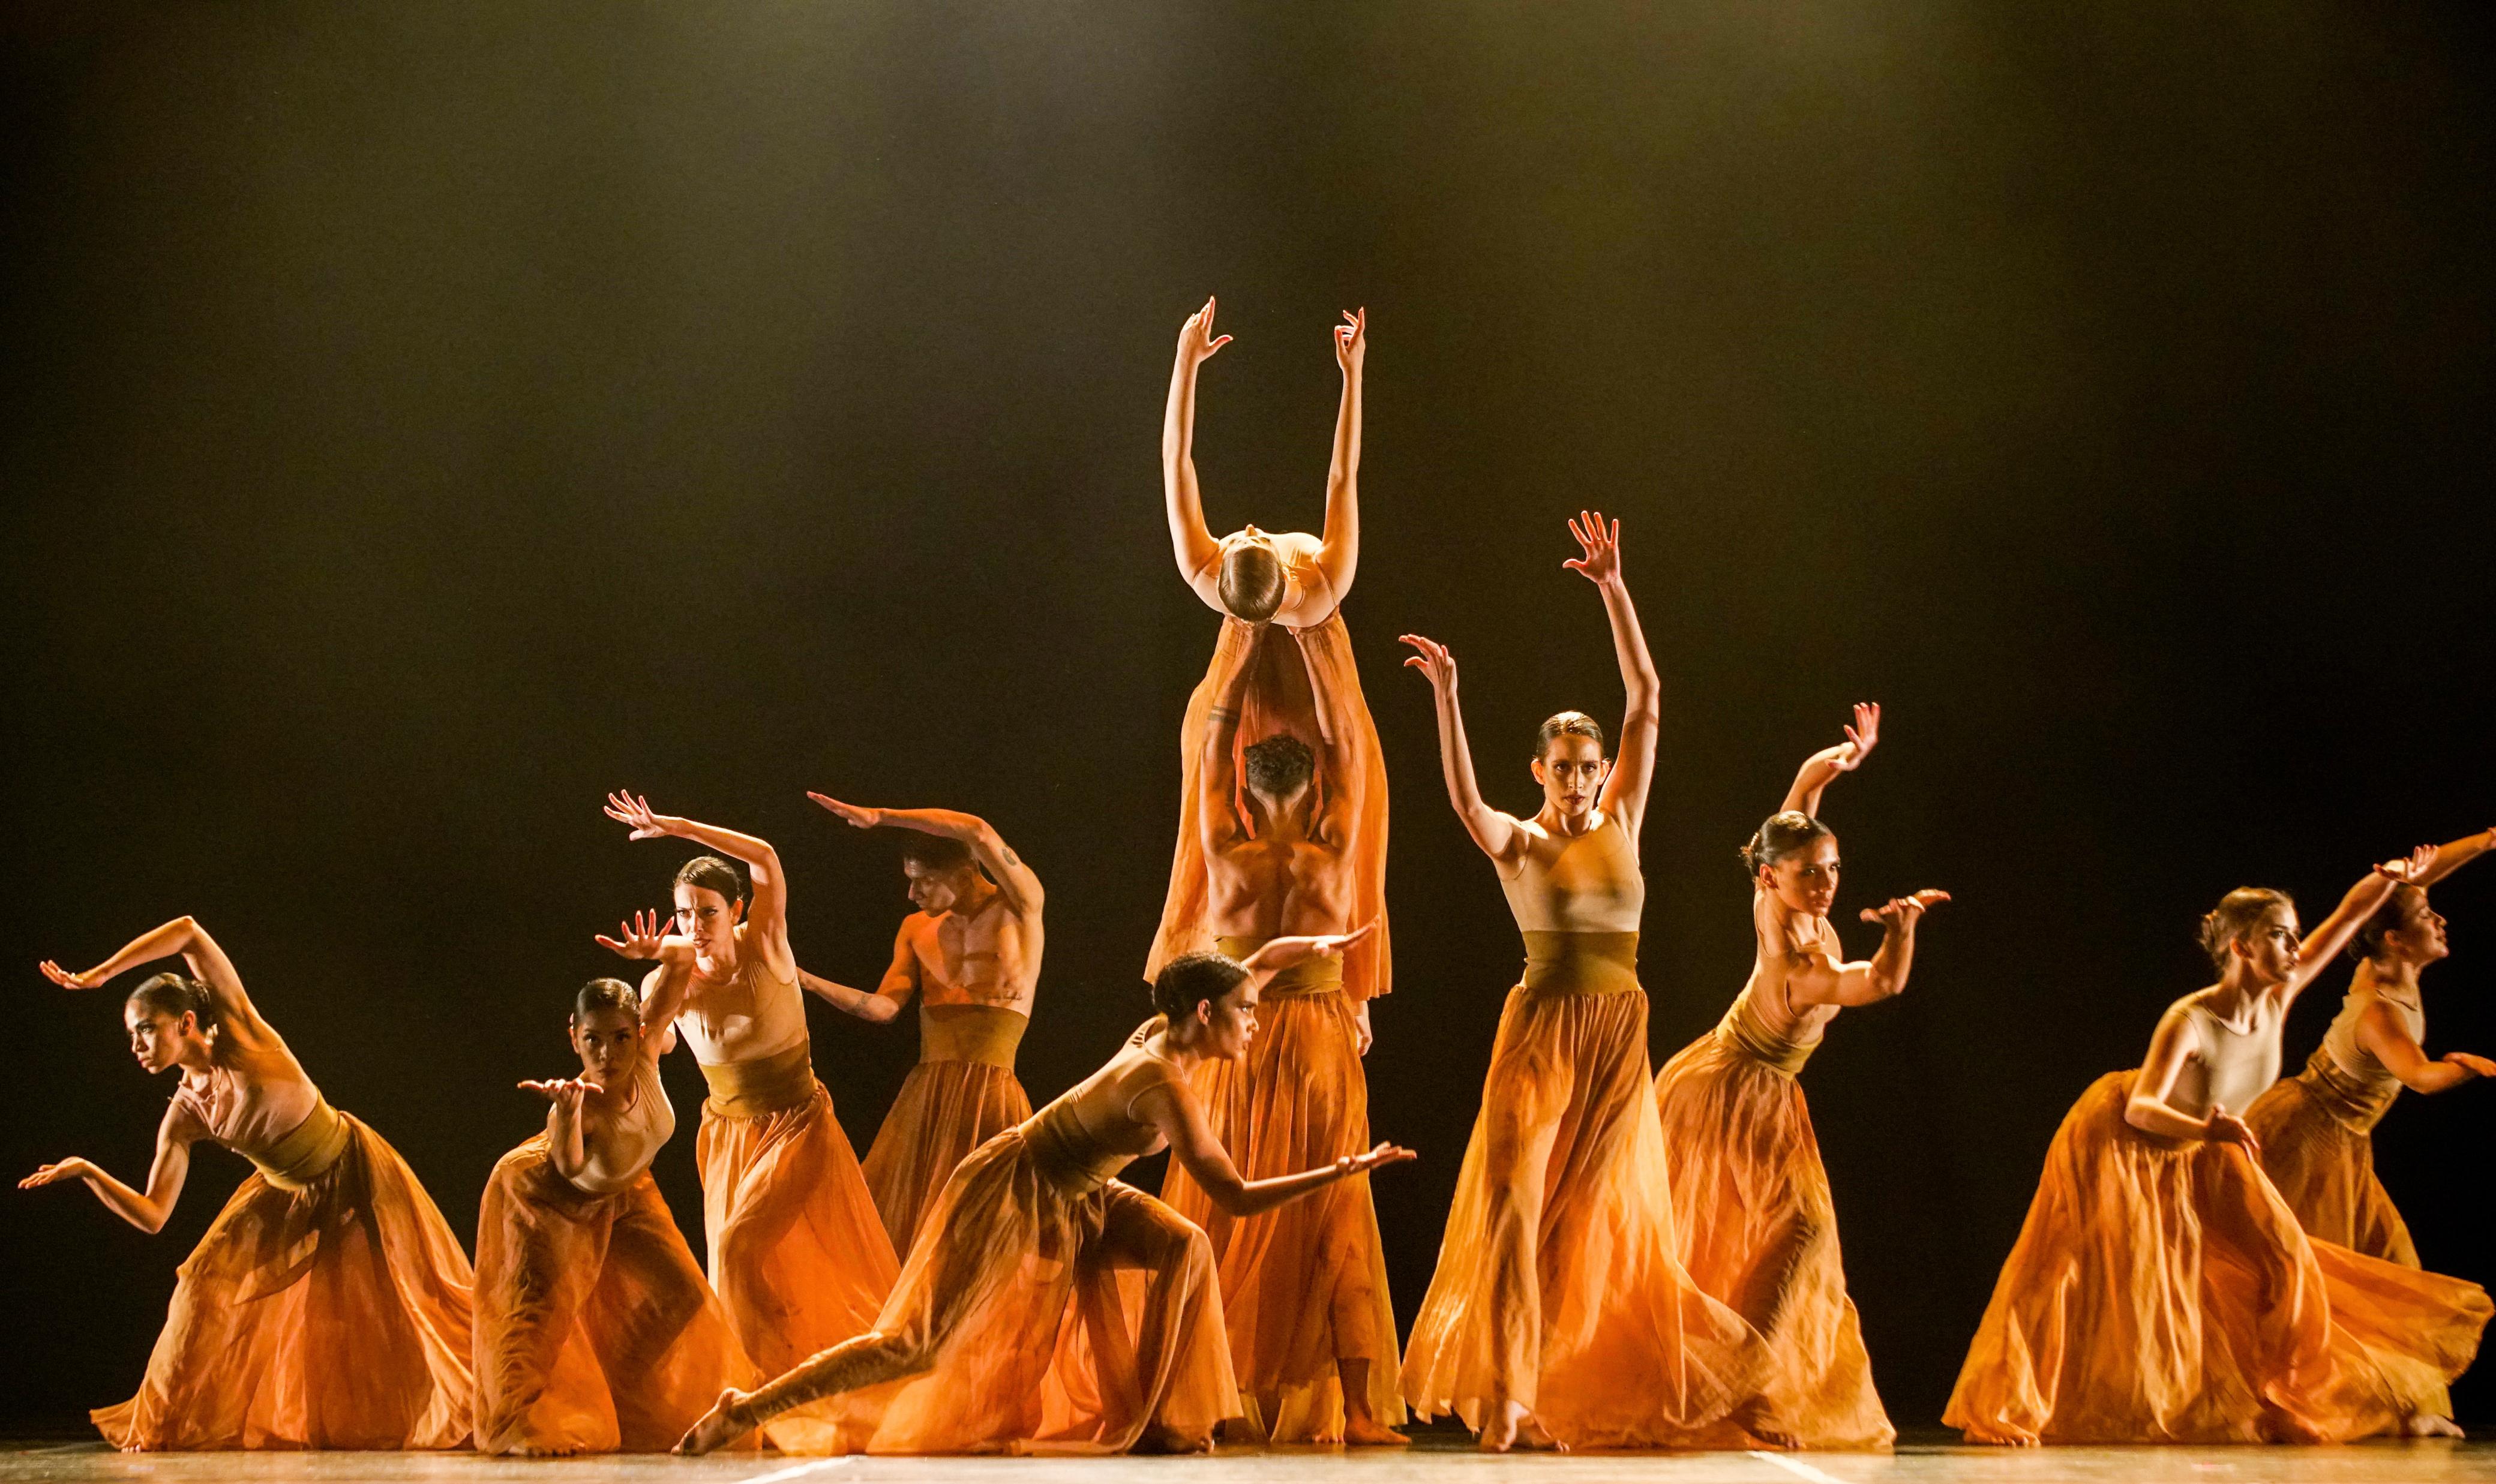 Foto de um grupo de bailarinos vestidos com roupas predominantemente na cor laranja se apresentando em um palco.